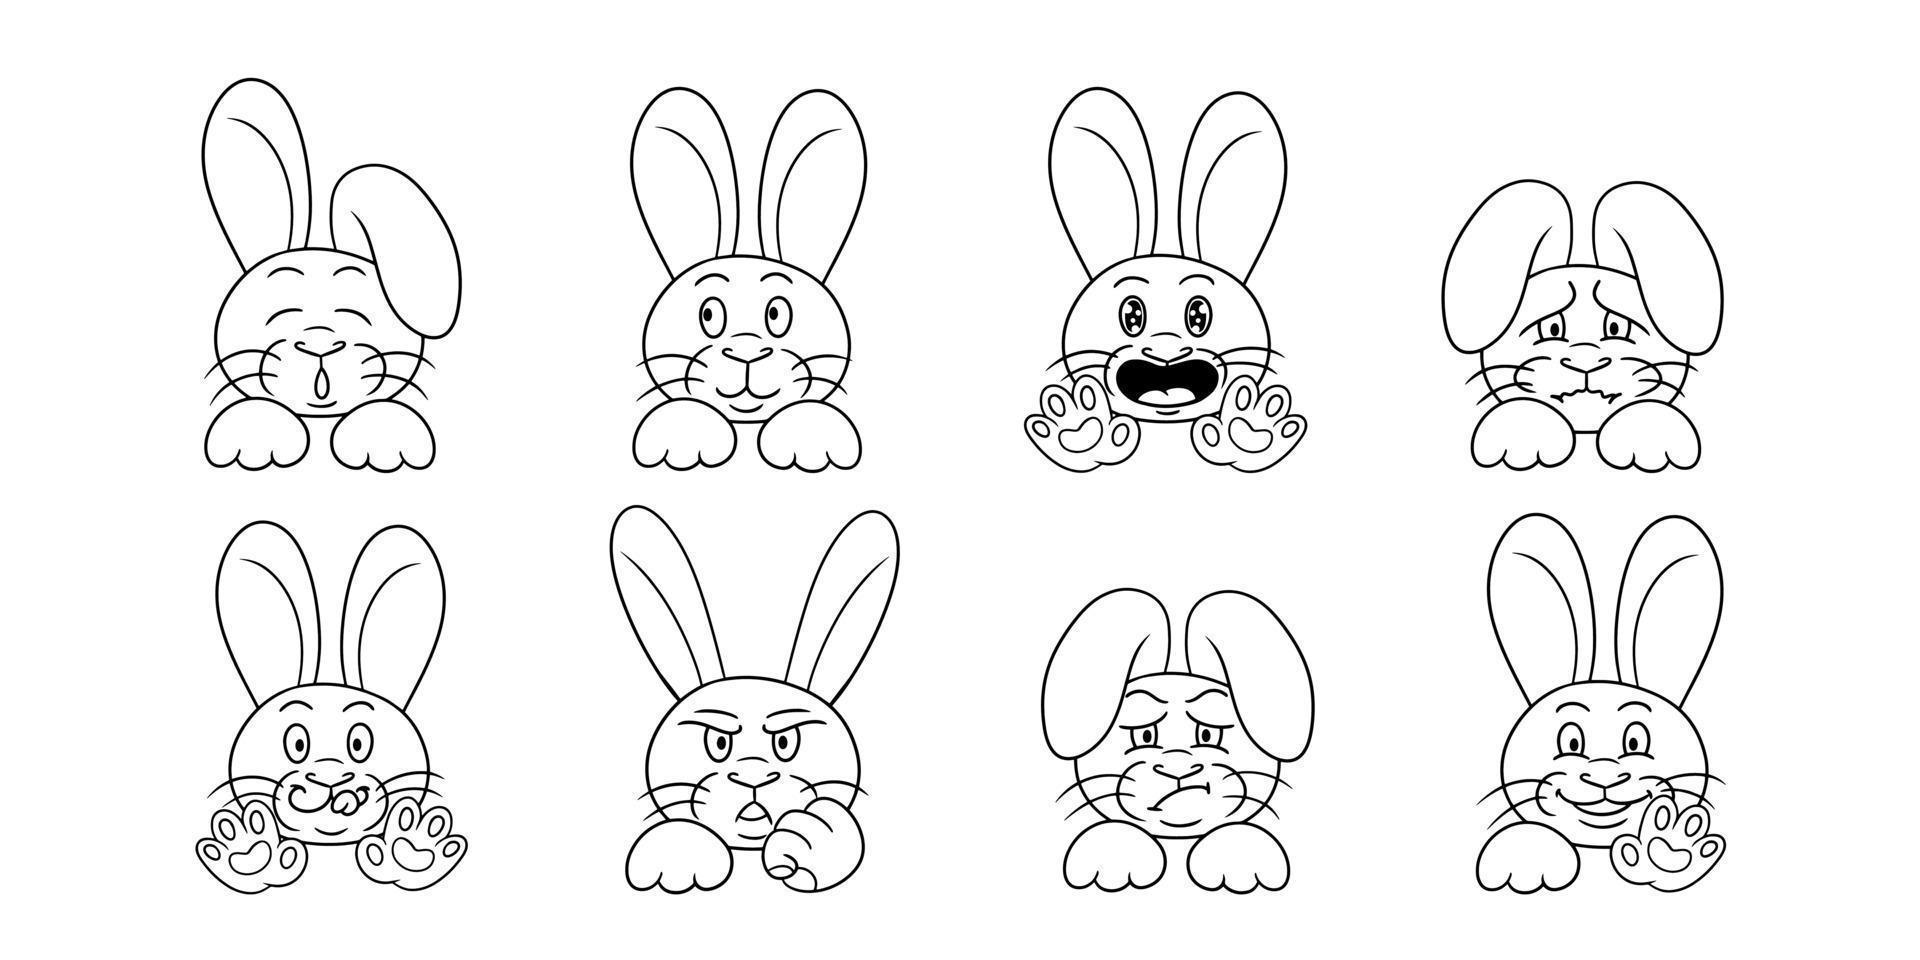 stor samling av monokroma karaktärer, söta små kaniner i tecknad stil, vektorillustration på vit bakgrund vektor